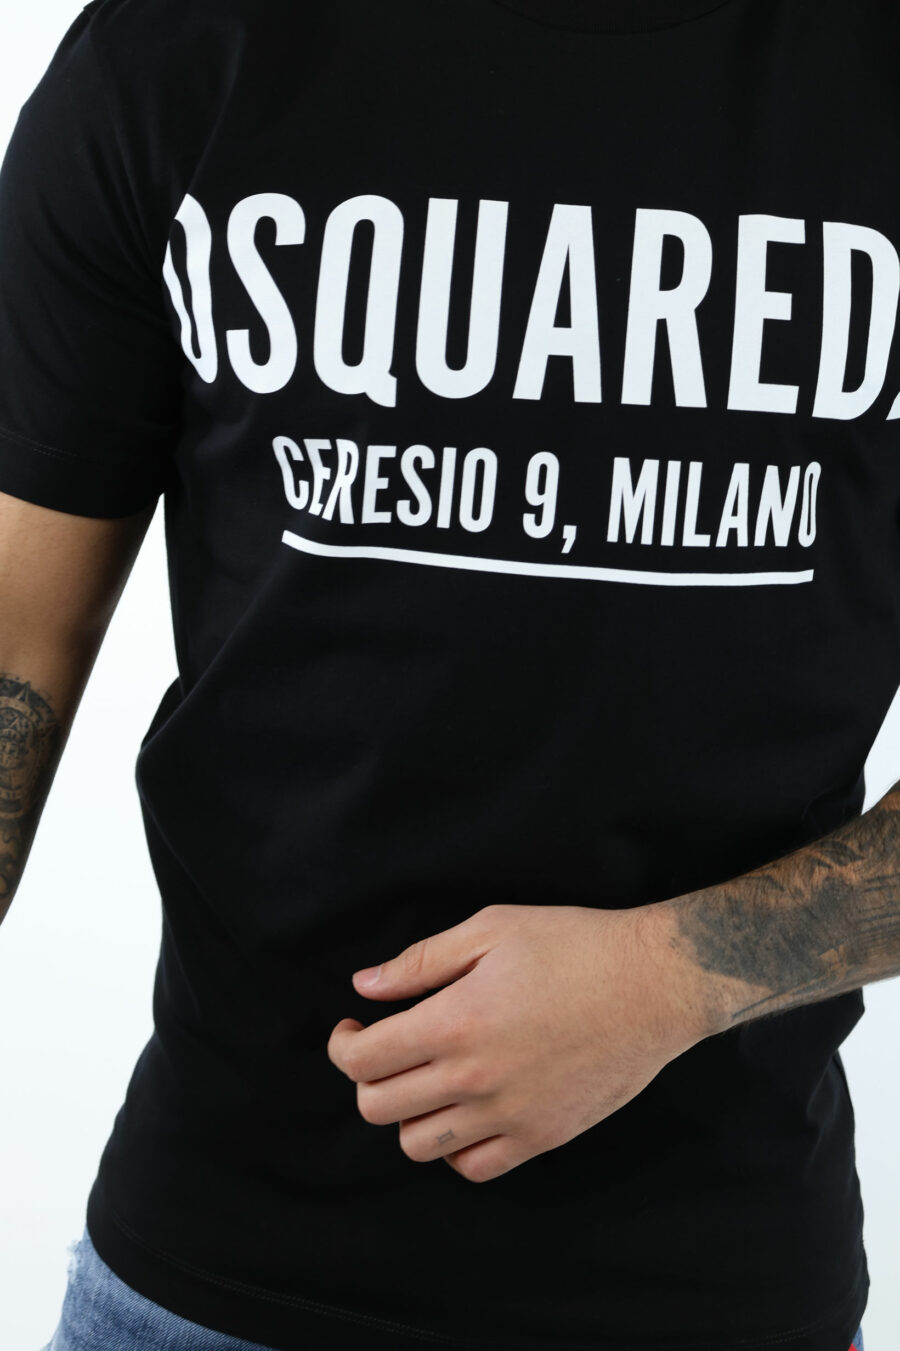 Schwarzes T-shirt mit Maxilogo "ceresio 9 milano" - 106863